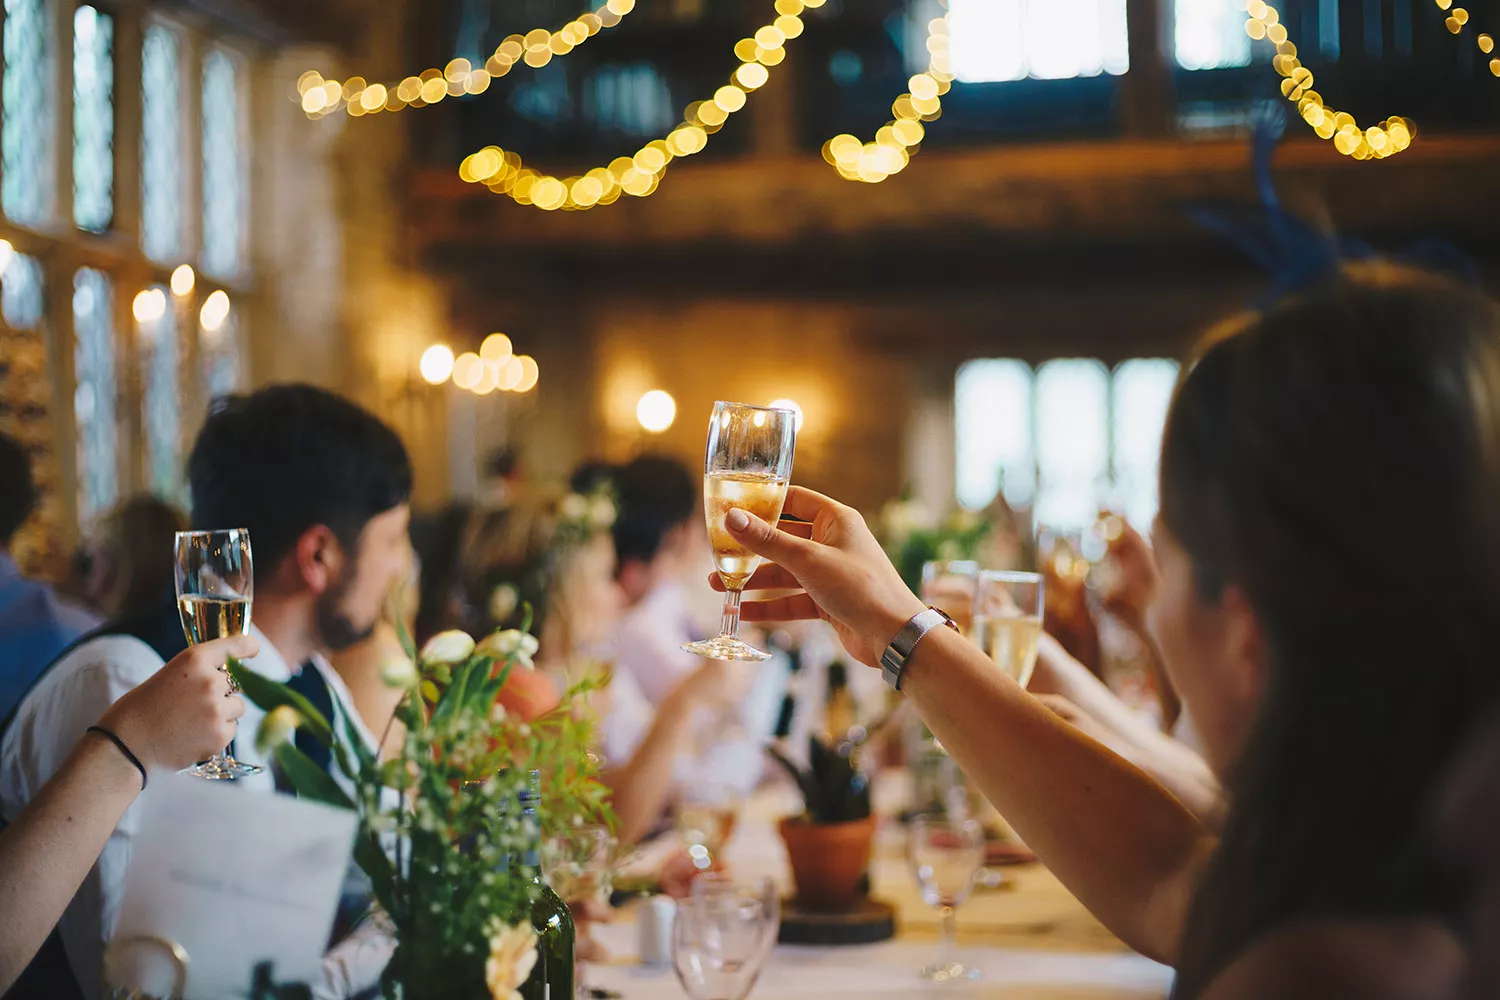 婚禮午宴流程依新人居住距離或雙方文化而有所差異。